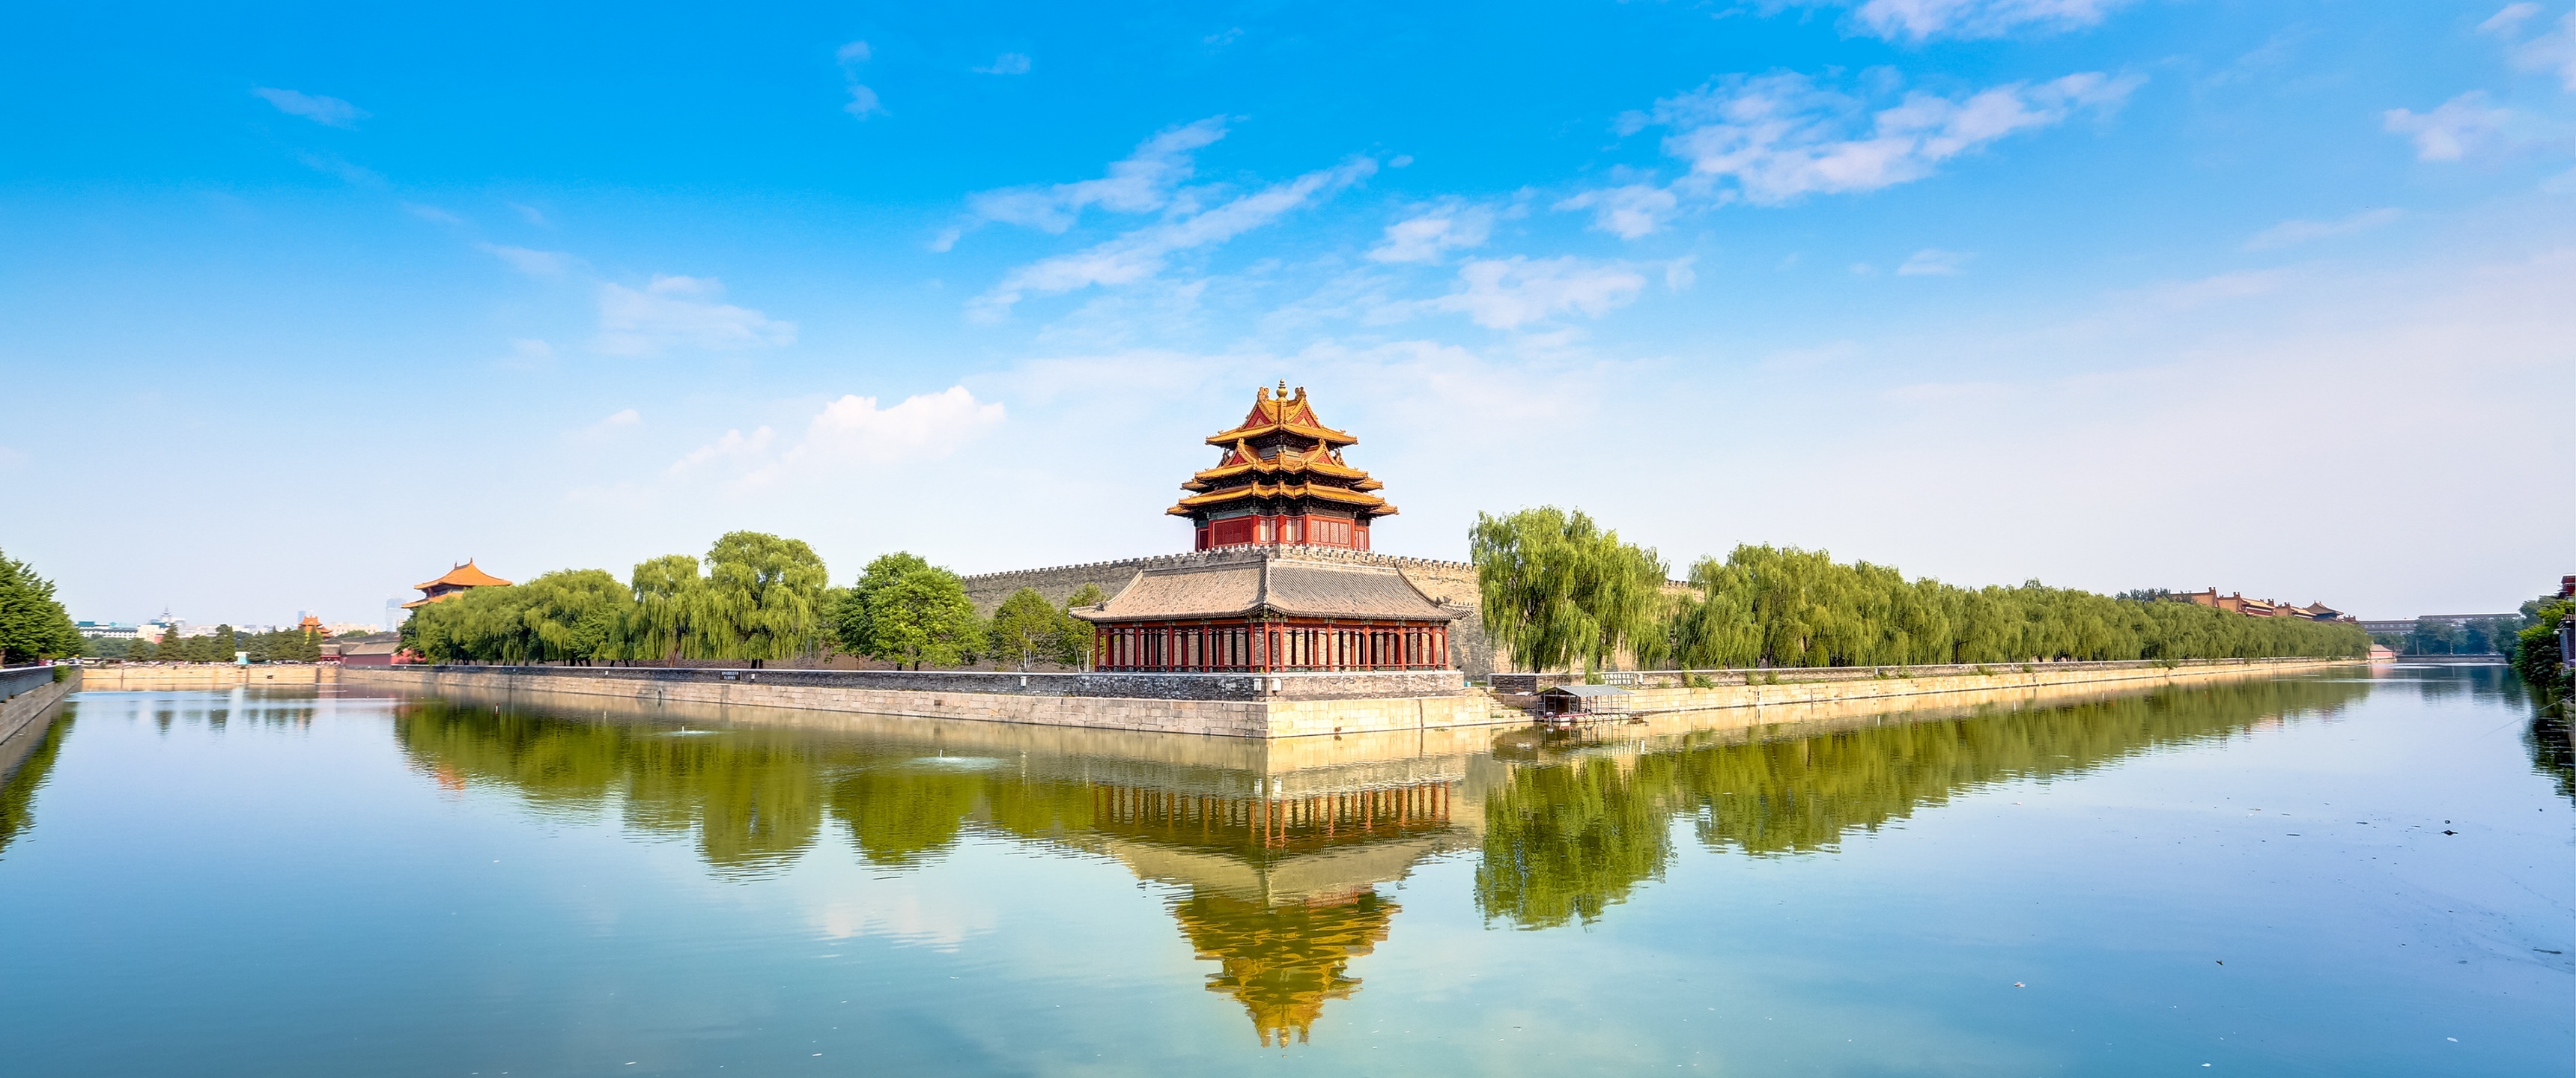 Forbidden City, Beijing's treasure, 4K wallpaper, Imperial splendor, 3440x1440 Dual Screen Desktop